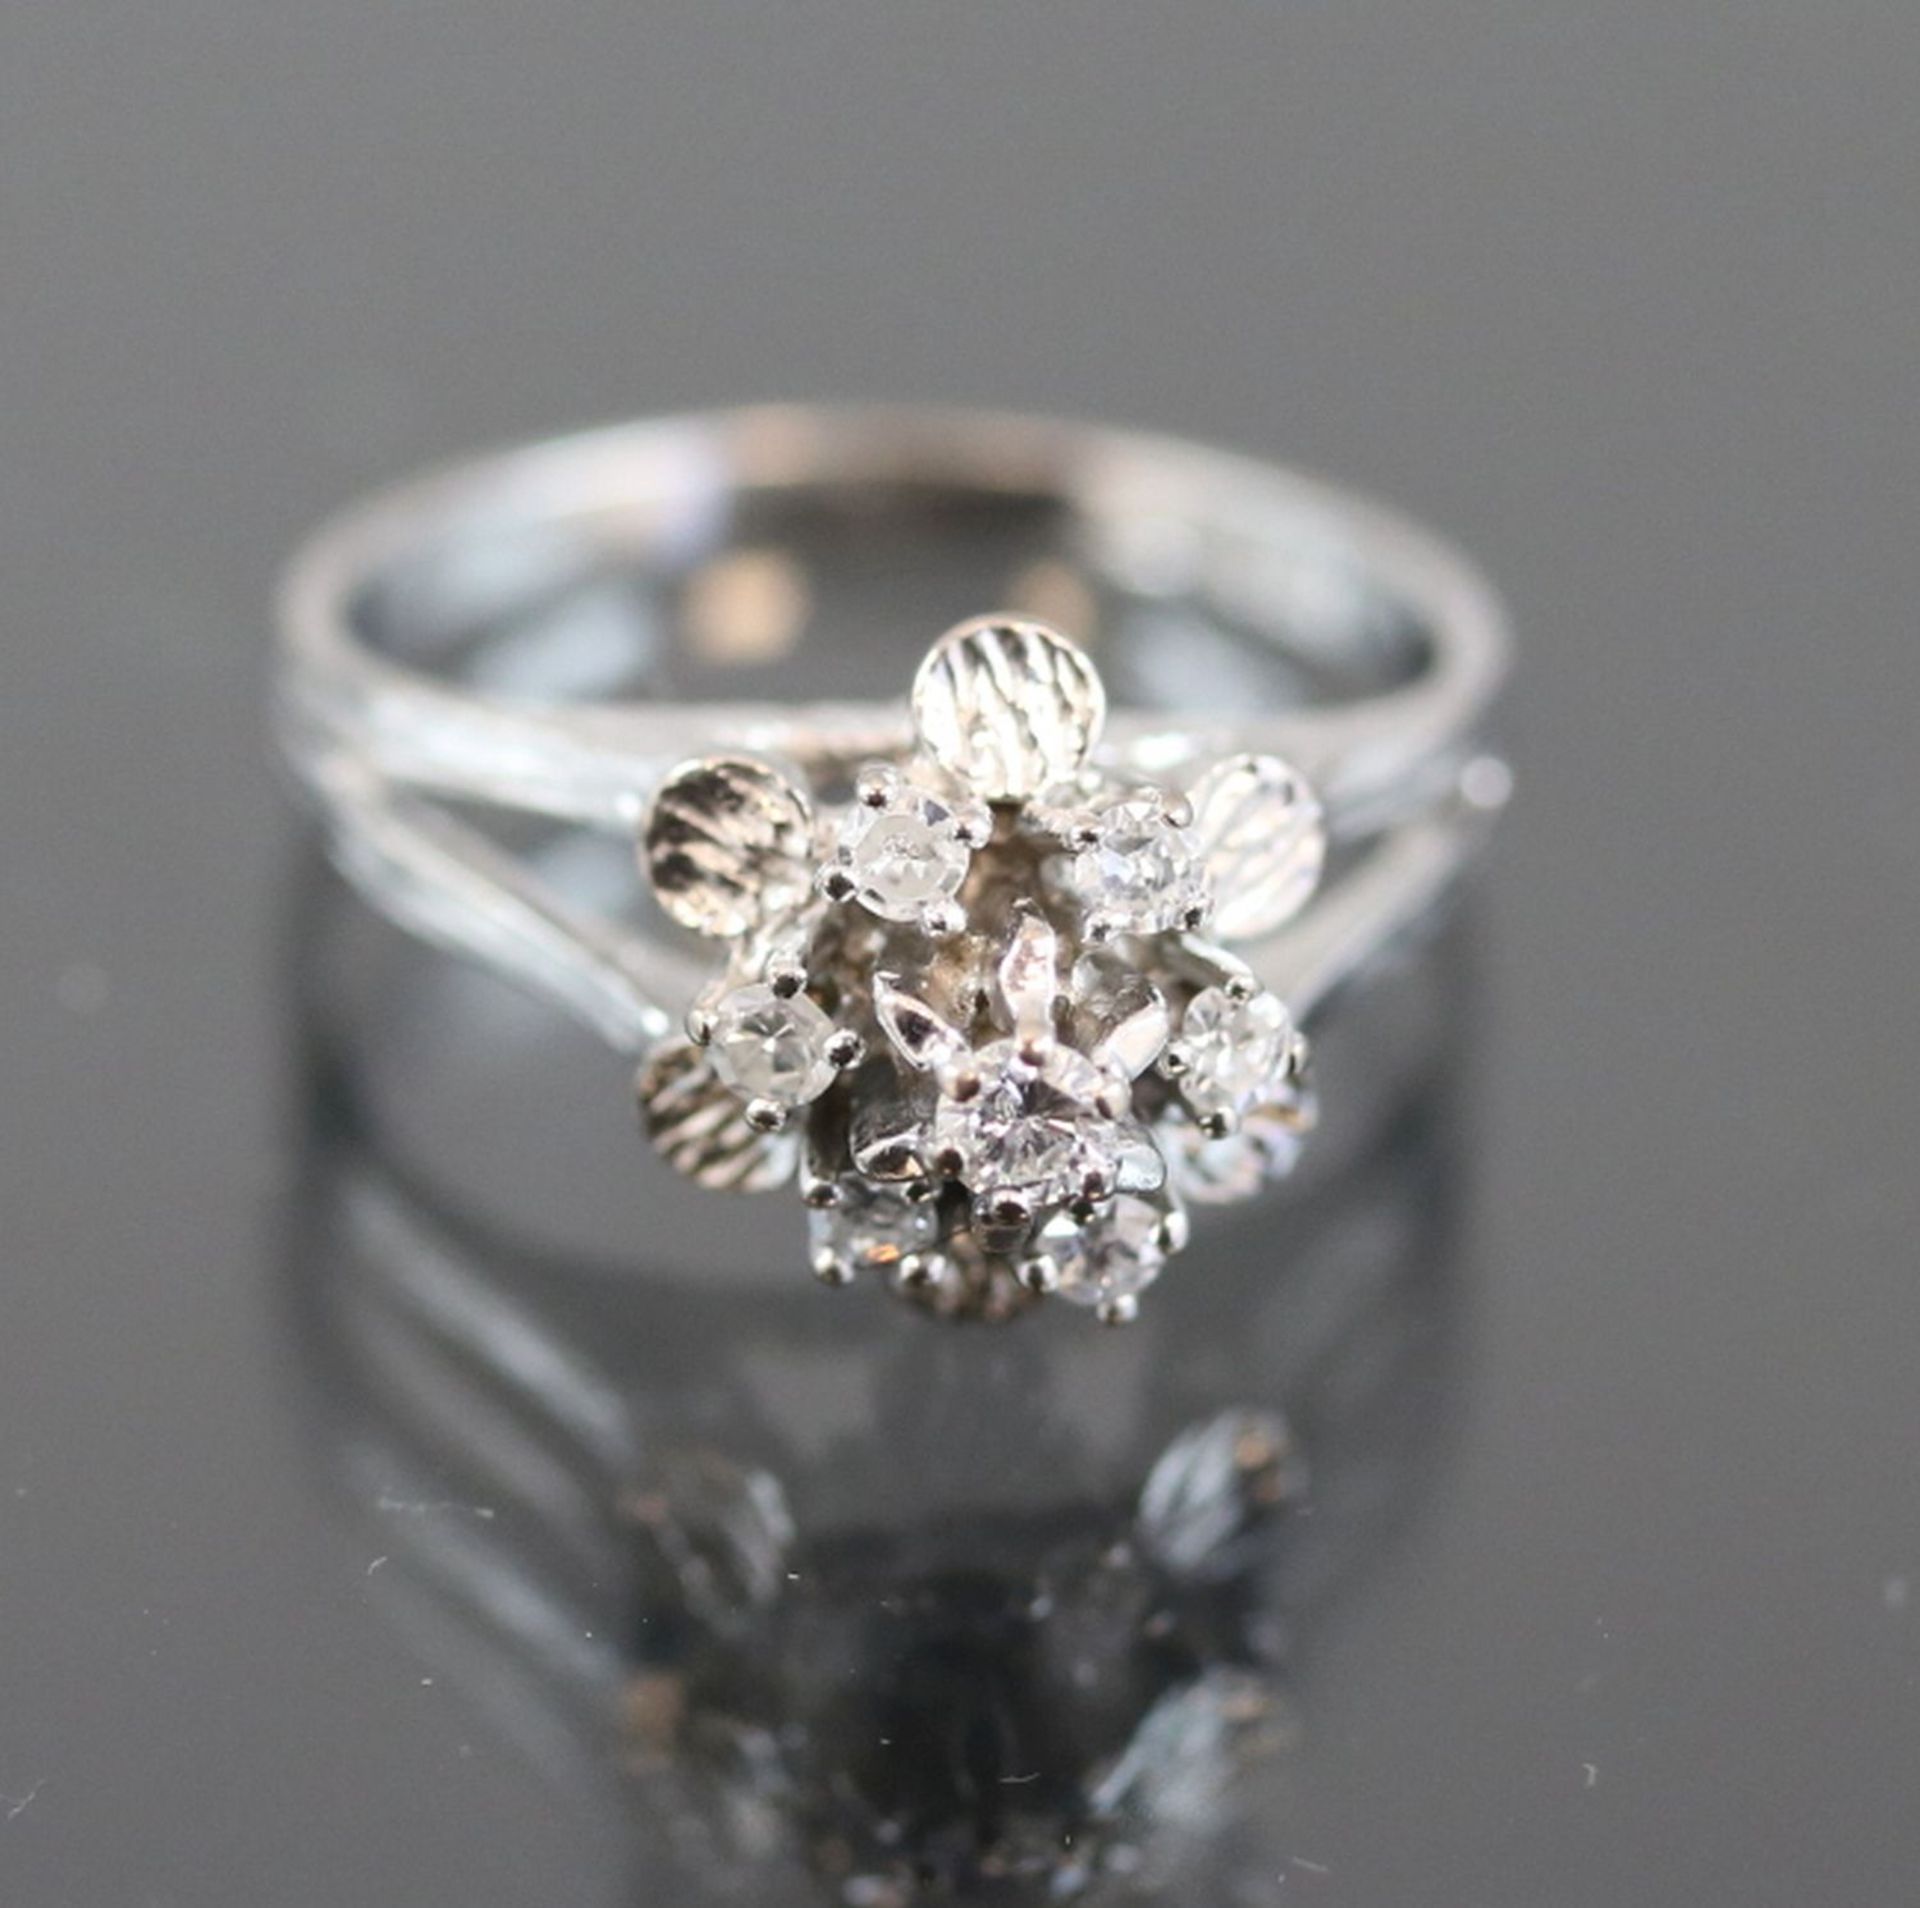 Diamant-Ring, 585 Weißgold3,2 Gramm 7 Diamanten, 0,15 ct., w/p1. Ringgröße: 49